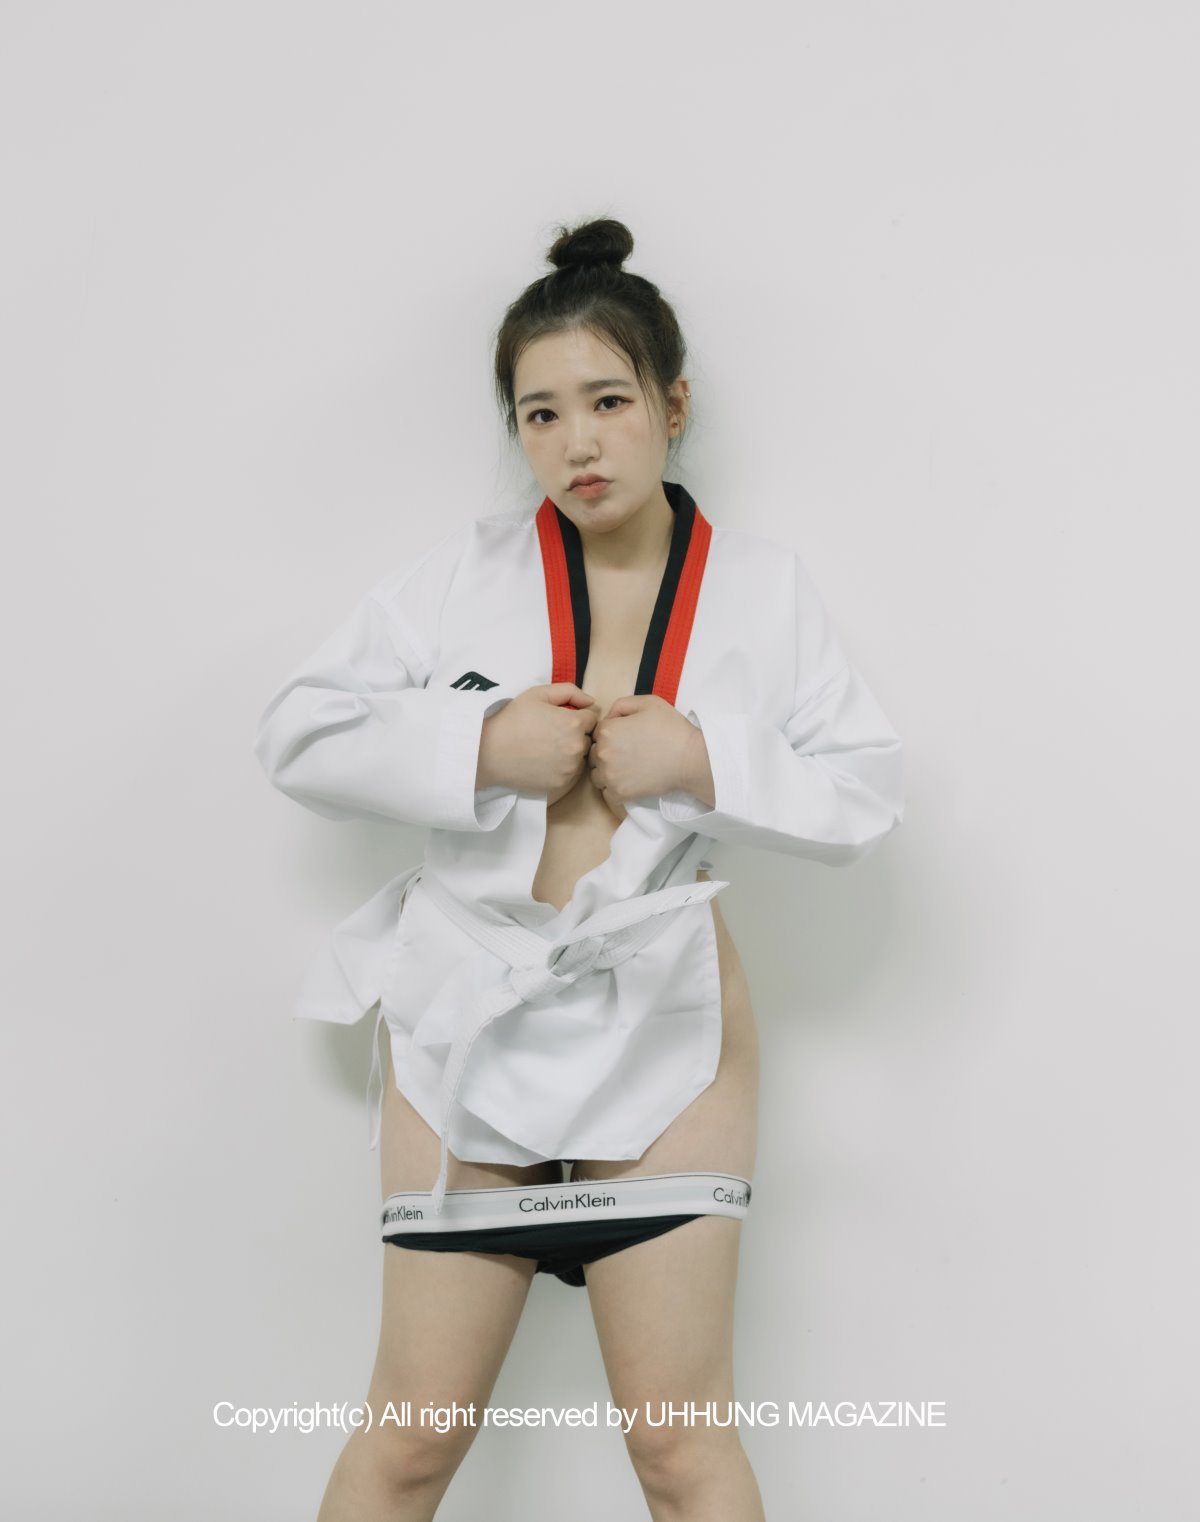 UHHUNG MAGAZINE Jenn Vol 1 Taekwondo Part2 0011 7453991511.jpg